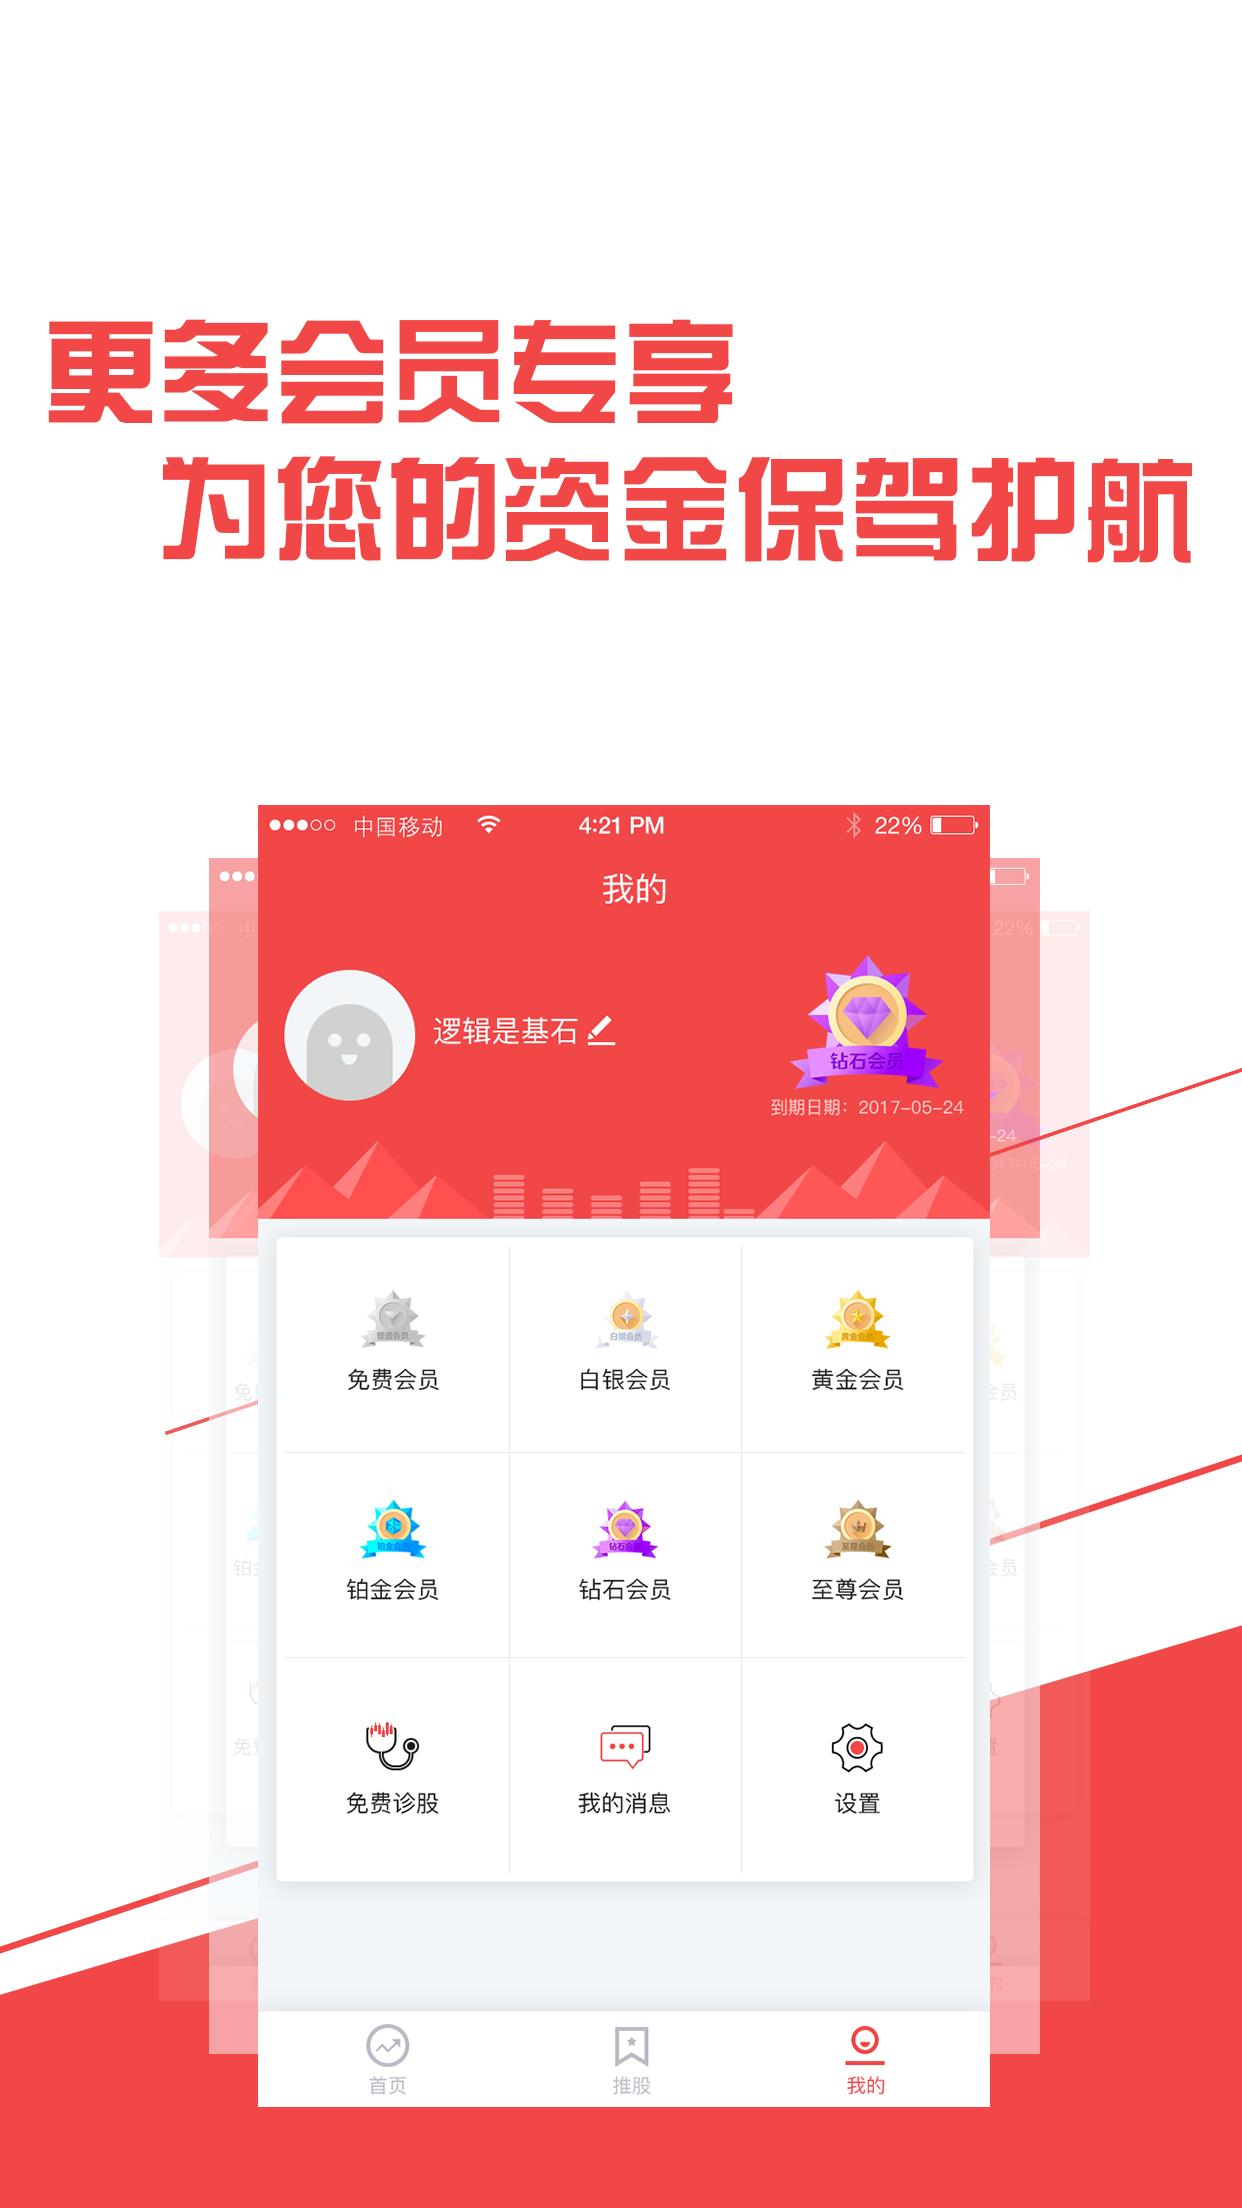 贝牛网app官方注册登录平台图片1